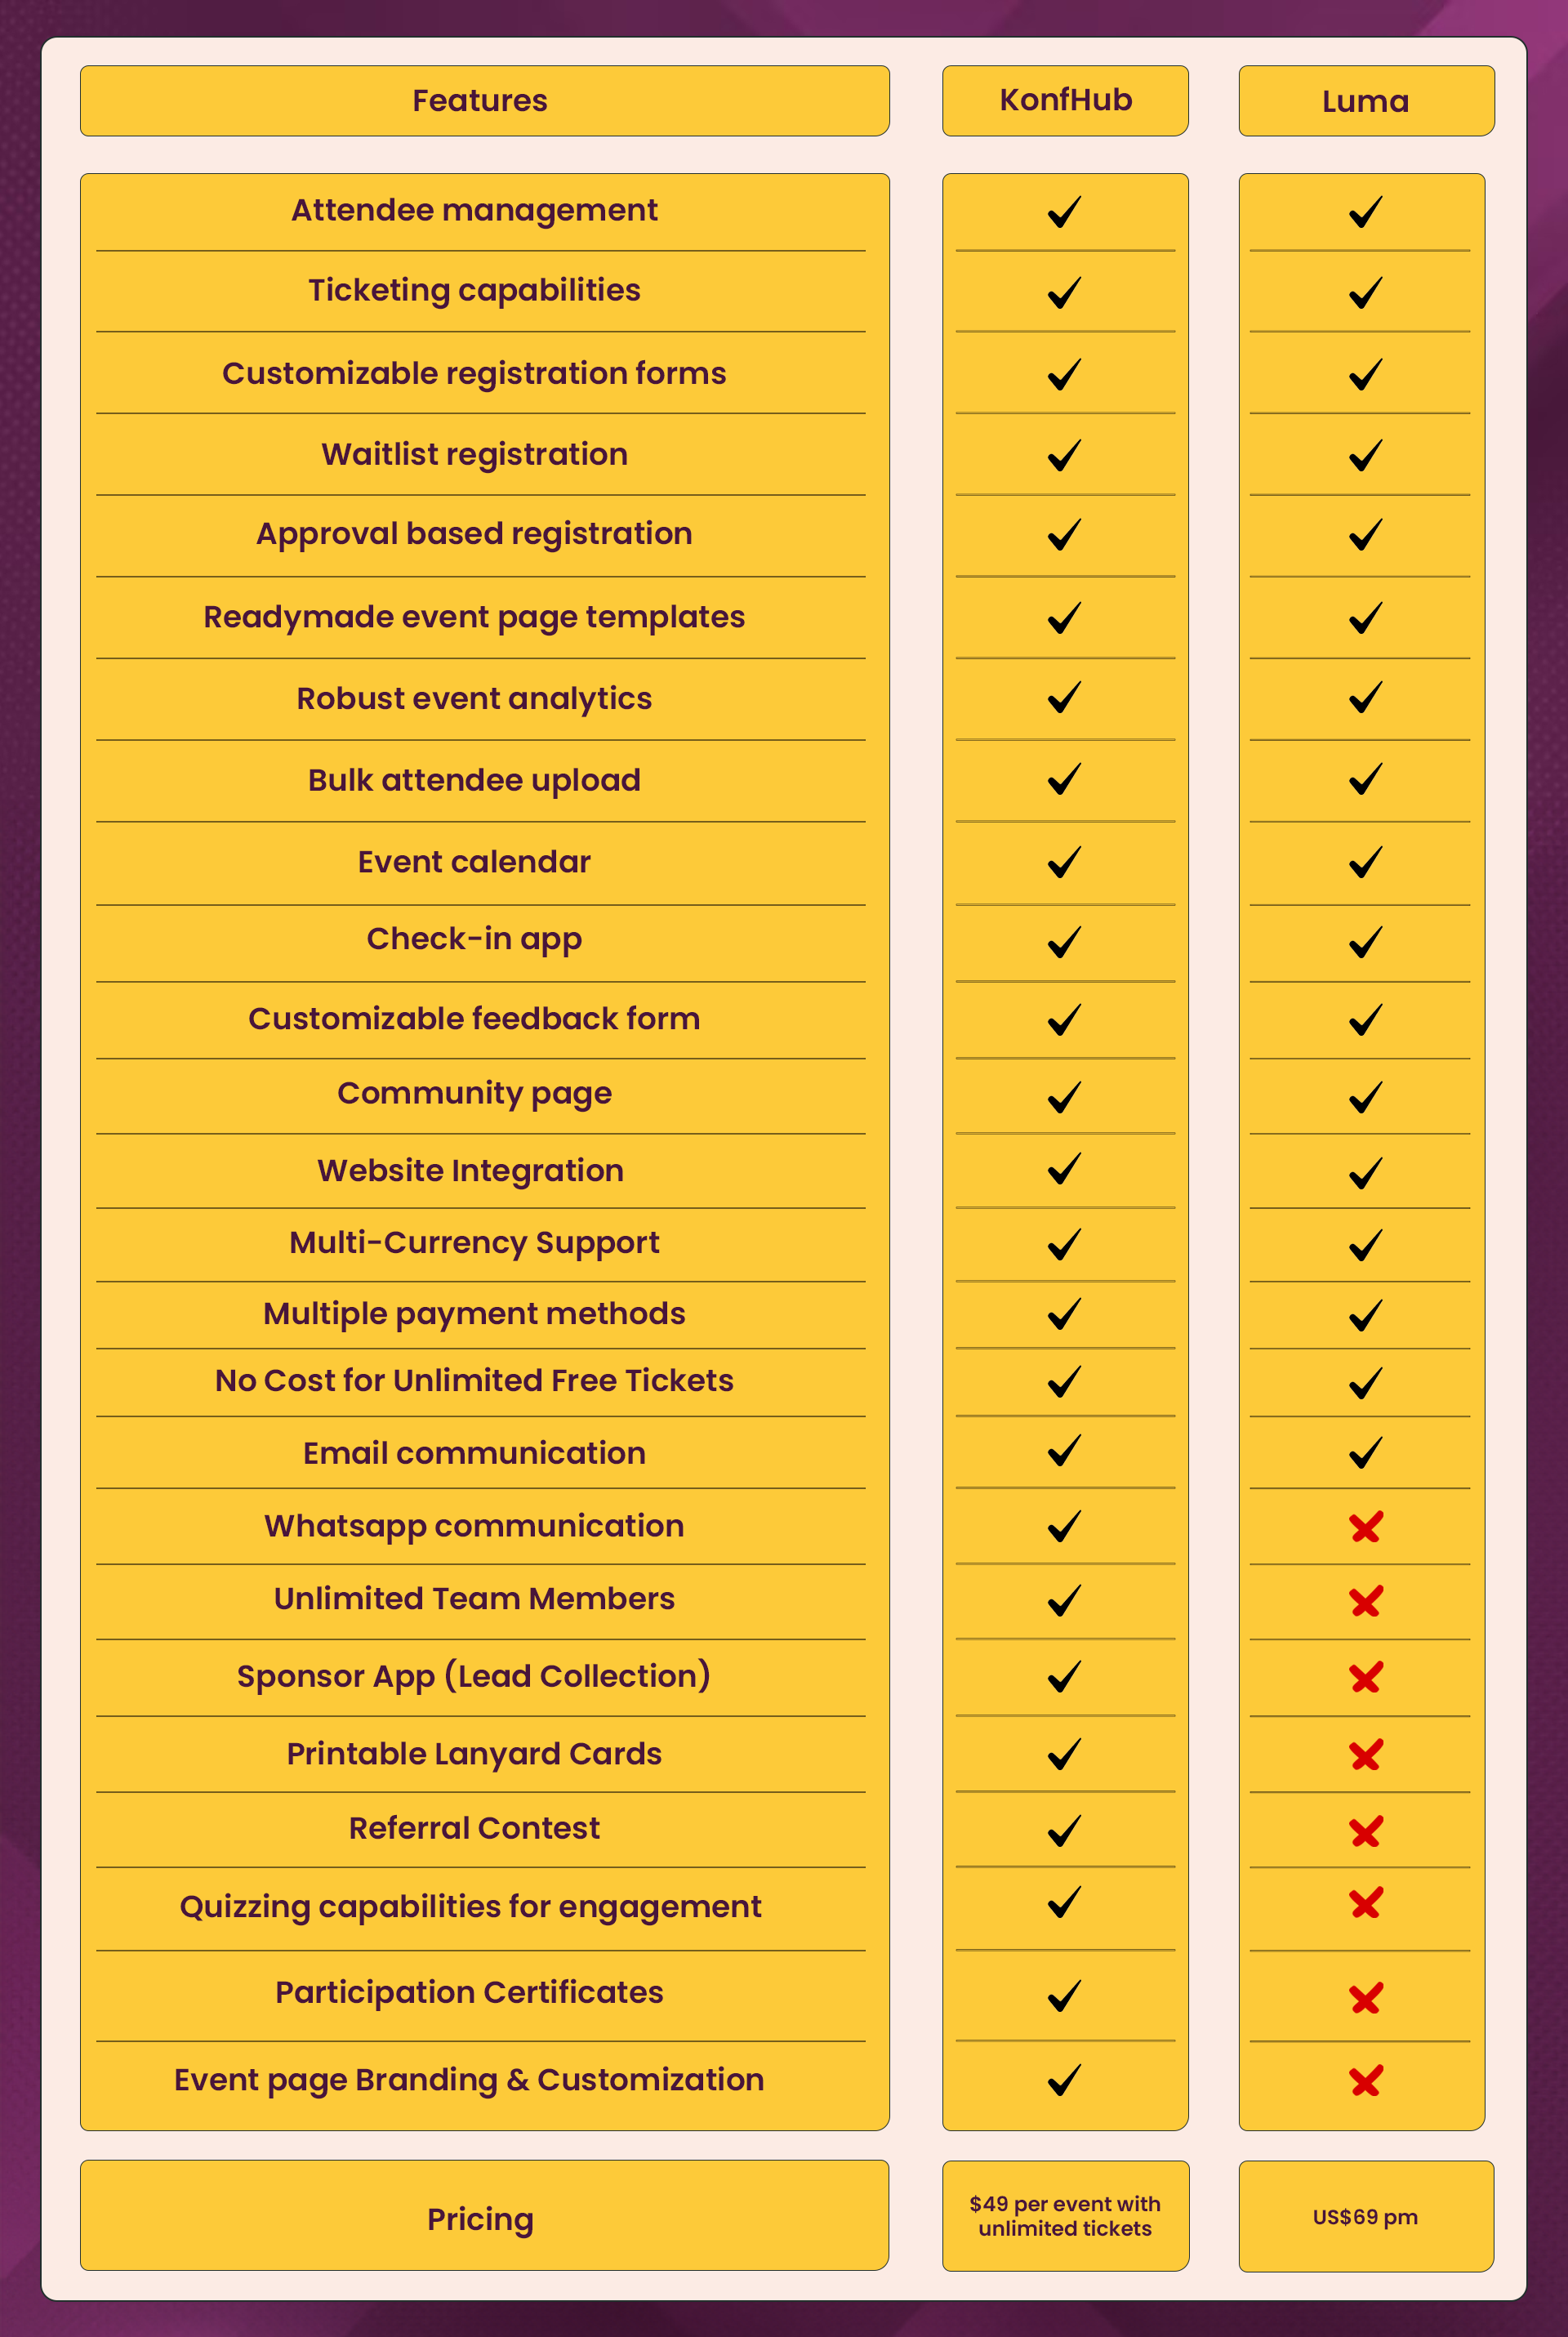 KonfHub vs Luma comparison table